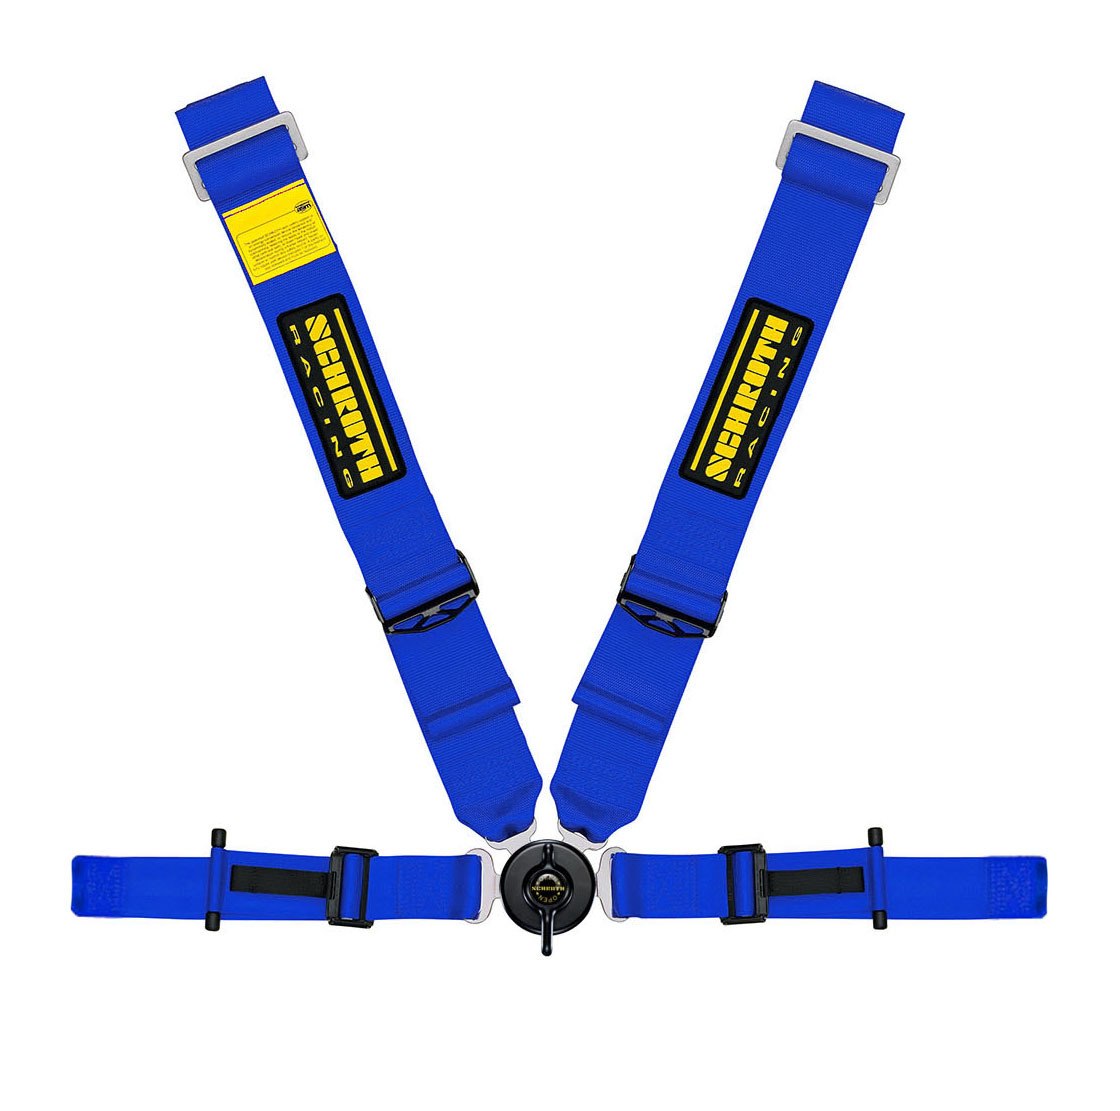 Schroth Profi II ASM 4 Point Harness (Anti-Sub) blue